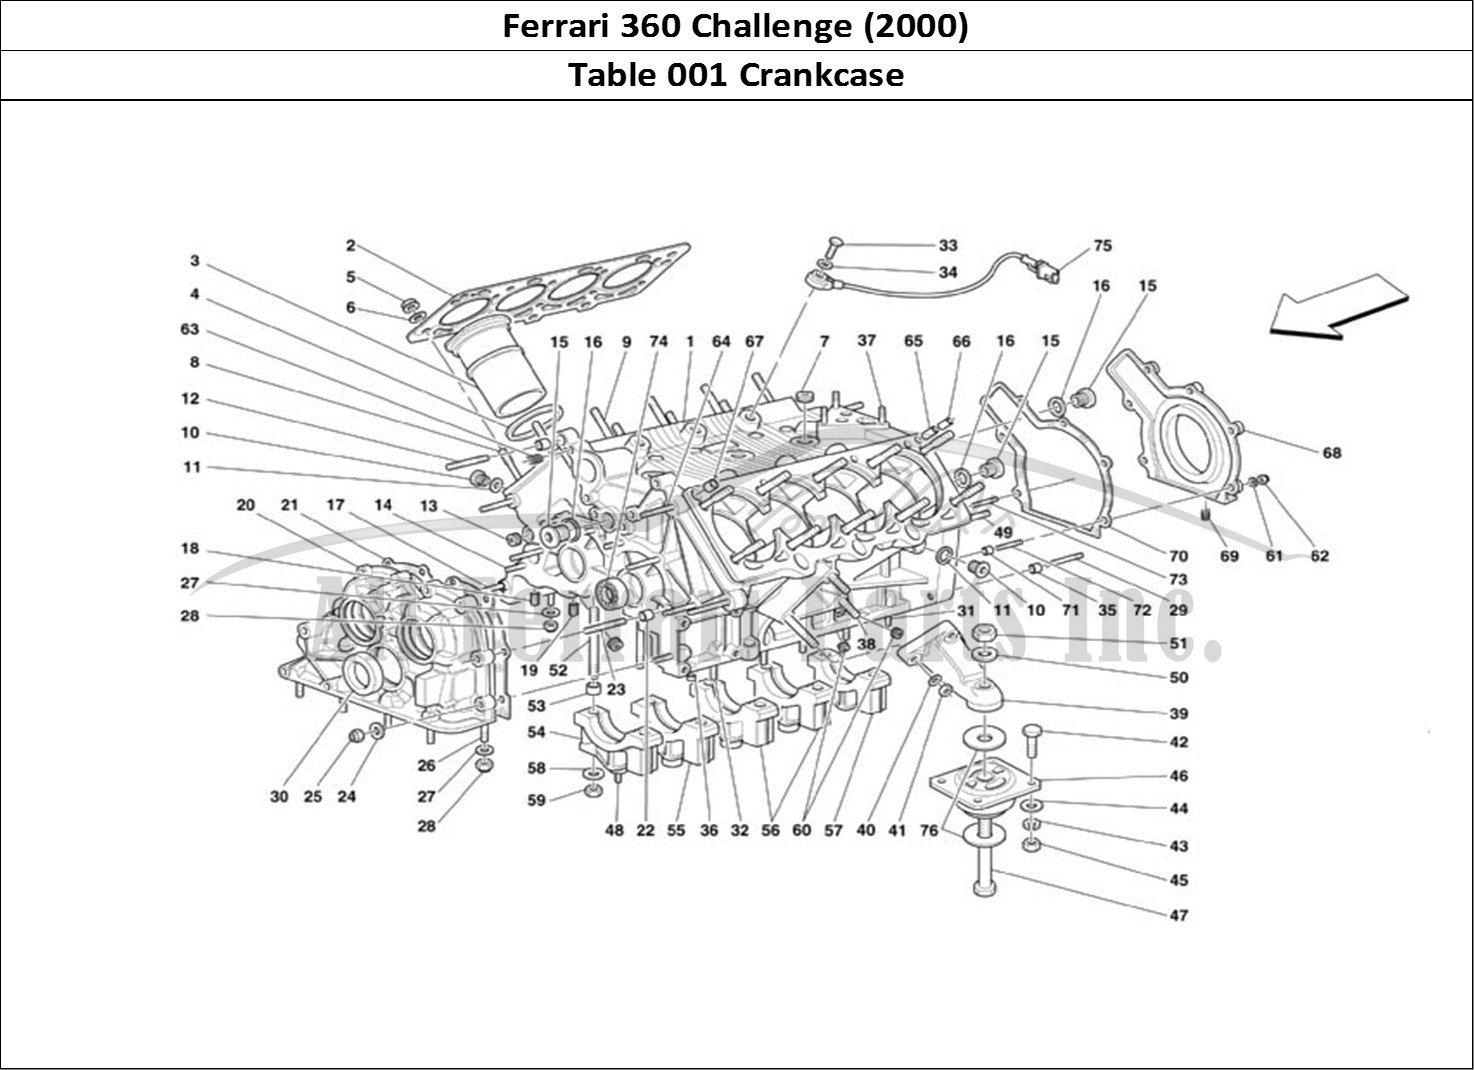 Ferrari Parts Ferrari 360 Challenge (2000) Page 001 Crankcase